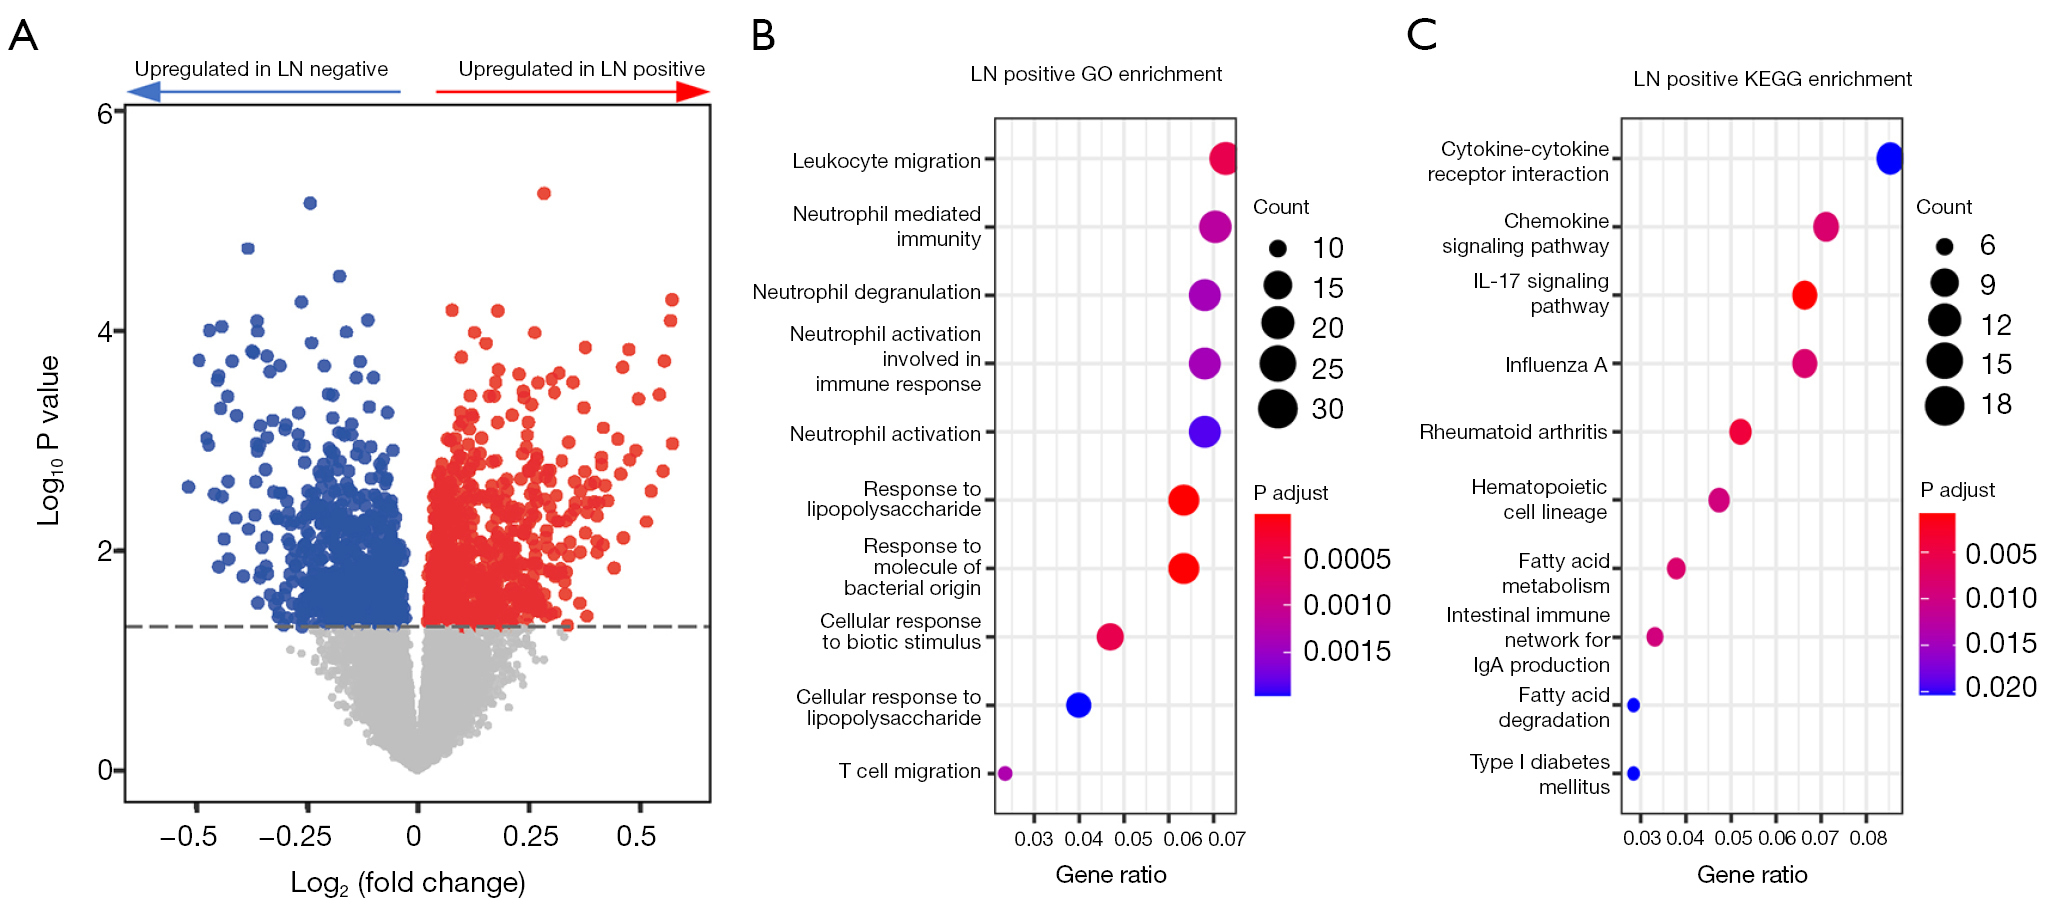 图 3 LN 阳性和 LN 阴性患者转录组的差异。(A）LN 阳性和 LN 阴性患者 RNA 表达的差异。红色，LN 阳性患者延长；蓝色，LN 阳性患者缩短；灰色，无明显变化。横线代表 P=0.05。(B) LN 阳性患者上调基因的 GO 富集分析。点的大小代表通路中基因的数量，颜色代表调整后的 P 值。(C）LN 阳性患者上调基因的 KEGG 富集分析。点的大小代表通路中基因的数量，颜色代表调整后的 P 值。LN，淋巴结；GO，基因本体；KEGG，京都基因和基因组百科全书。